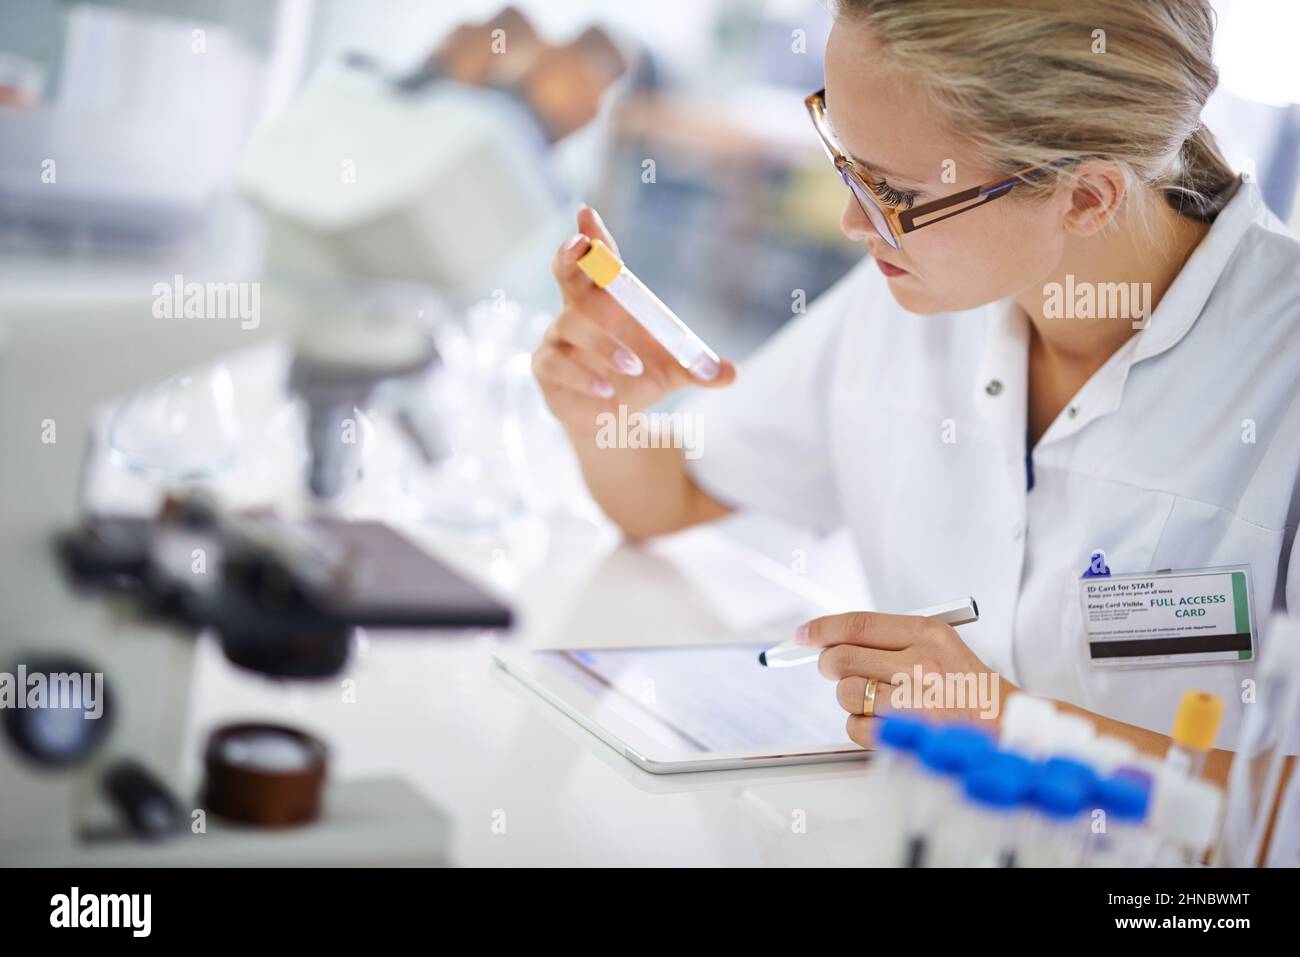 Forschung und Entwicklung. Eine junge Wissenschaftlerin, die ihre Ergebnisse auf einem Tablet aufzeichnete. Stockfoto